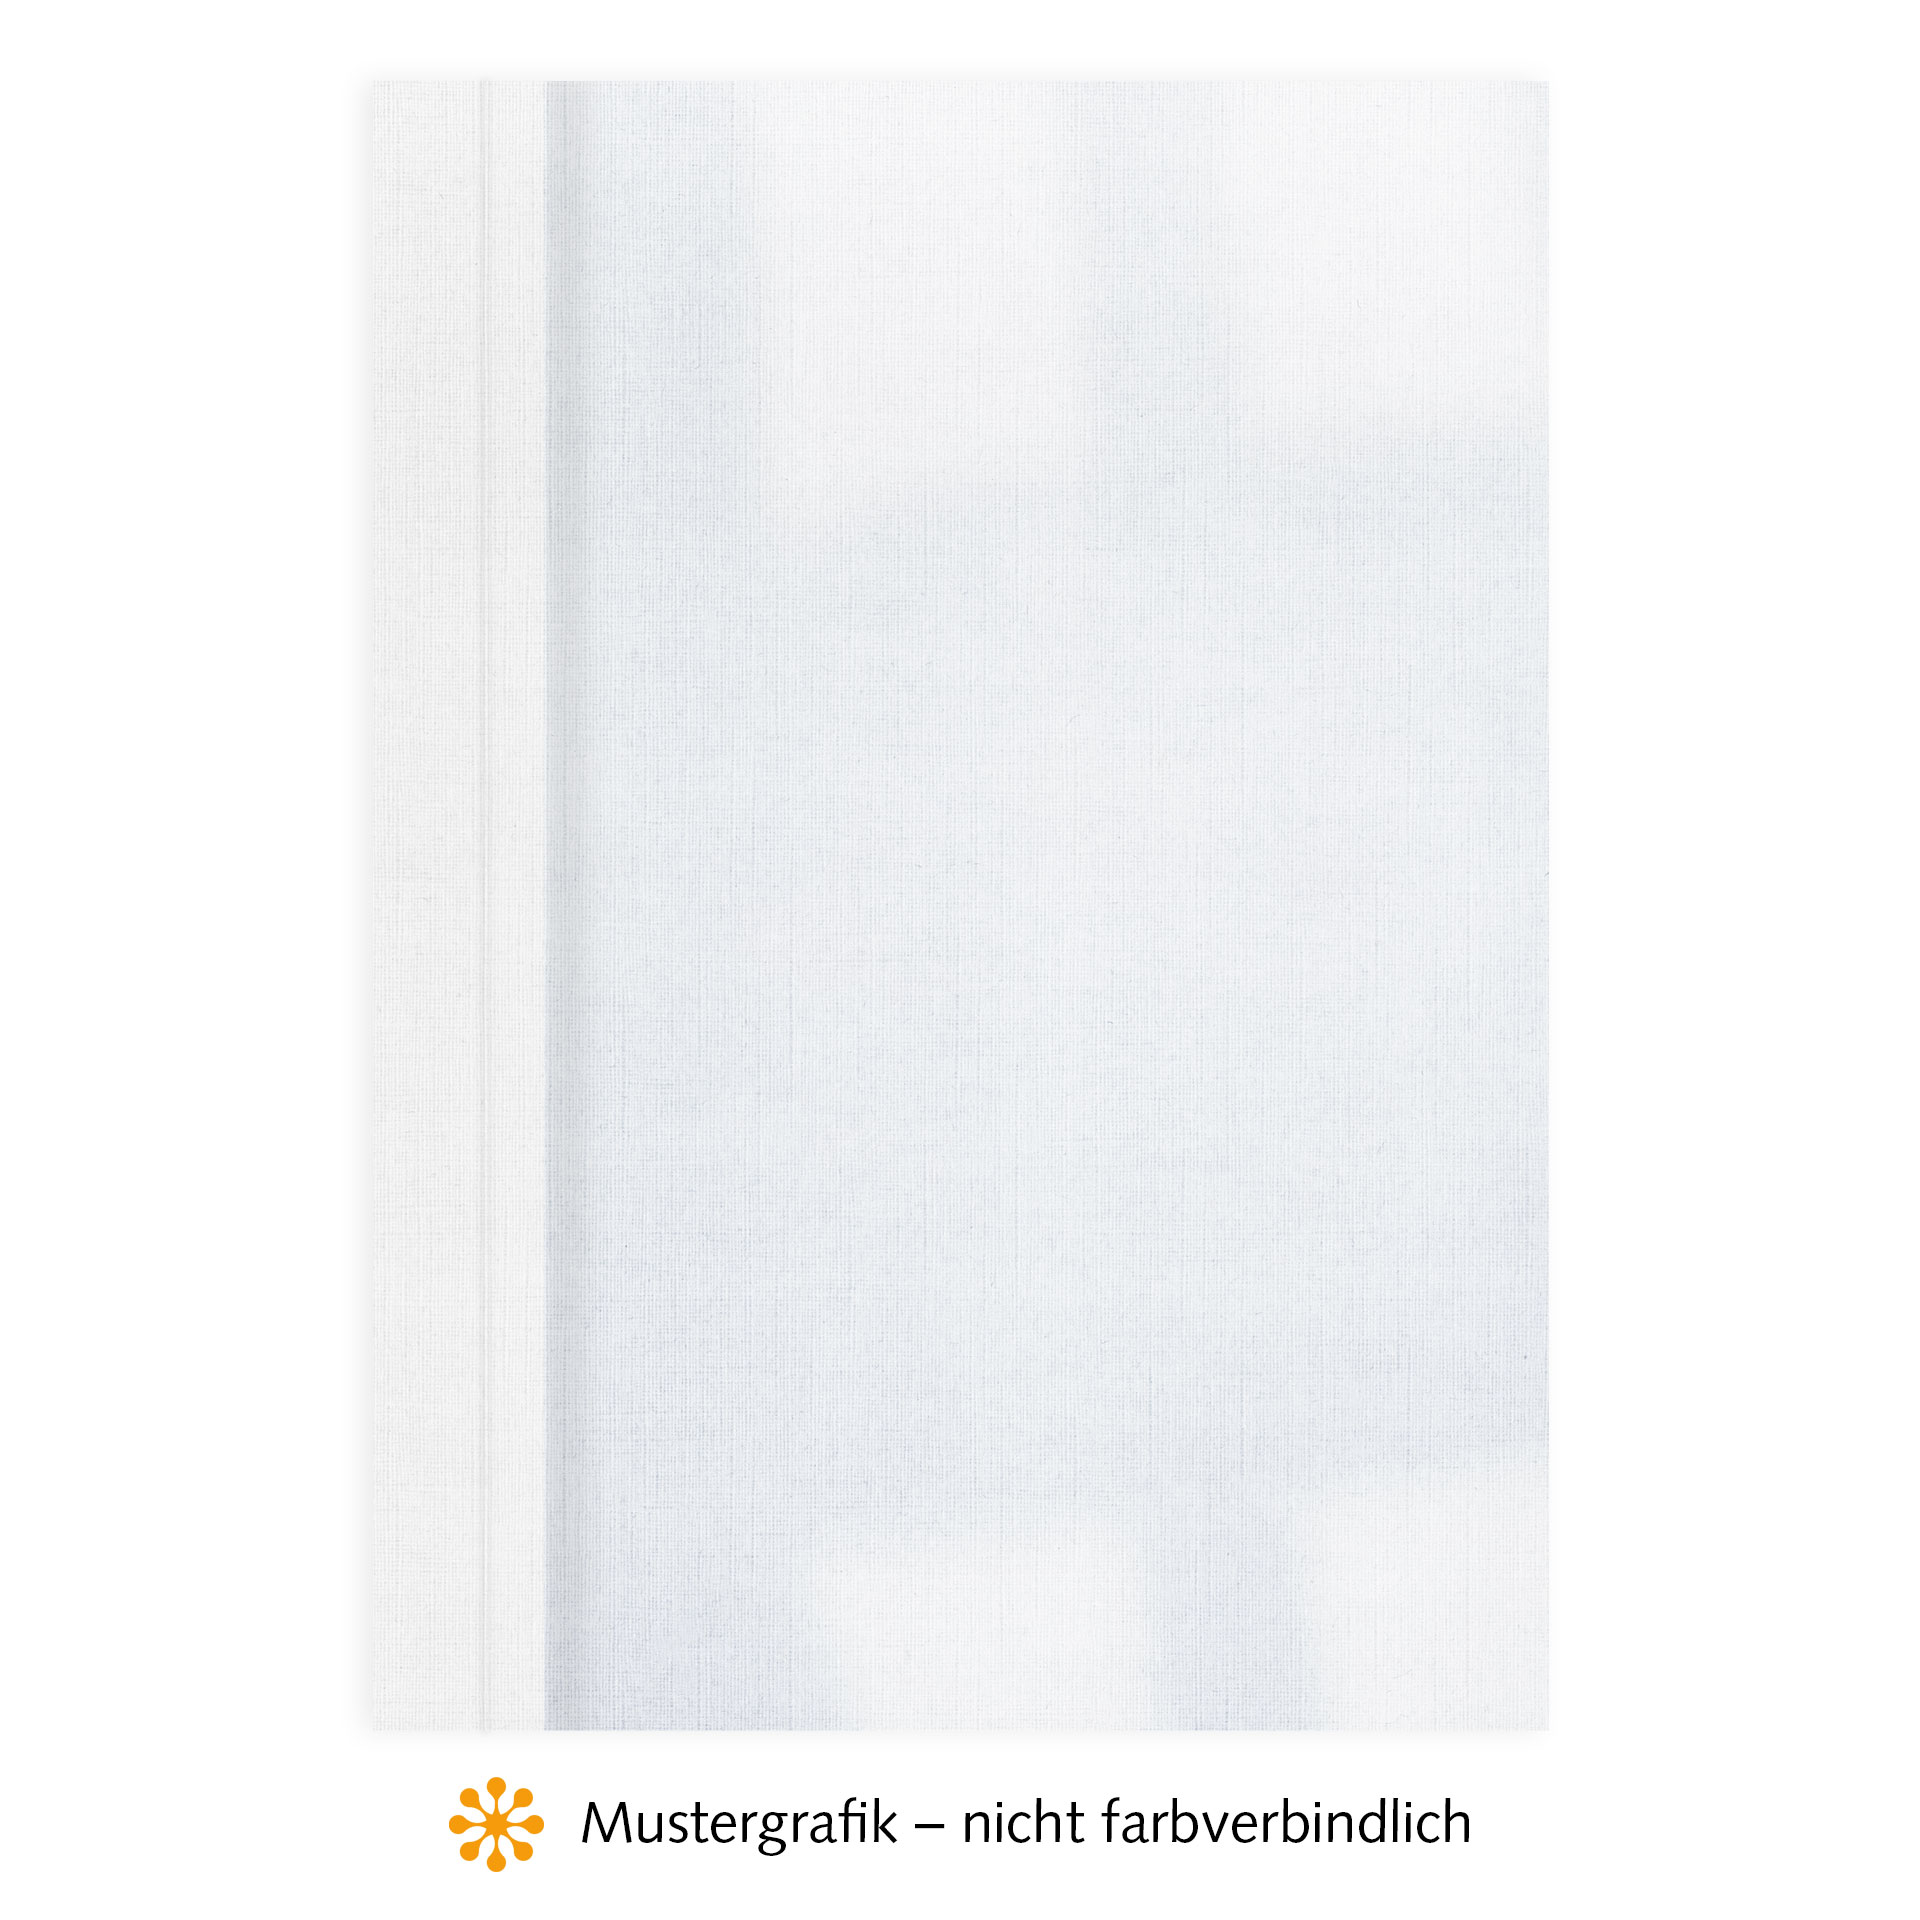 Ösenmappen DUO Cover, Vorderseite Folie KLAR transparent, Rückseite Karton Leinen, Weiß, 6 mm, 51 bis 60 Blatt